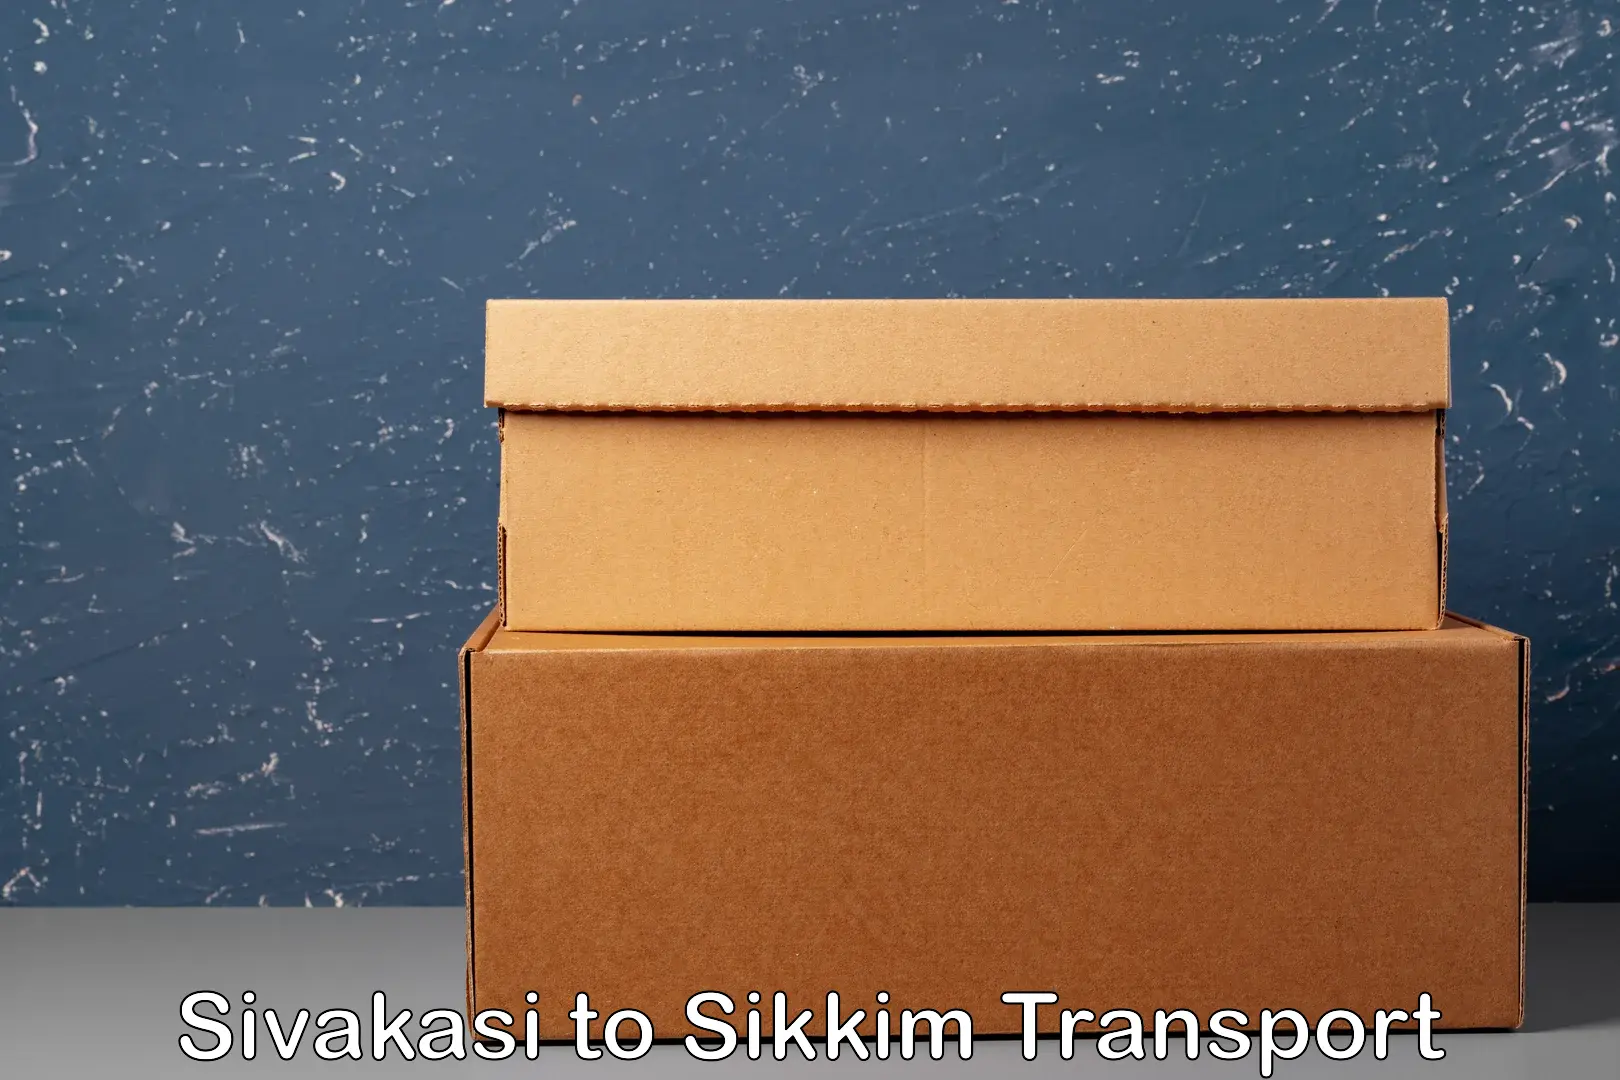 Online transport booking Sivakasi to Sikkim